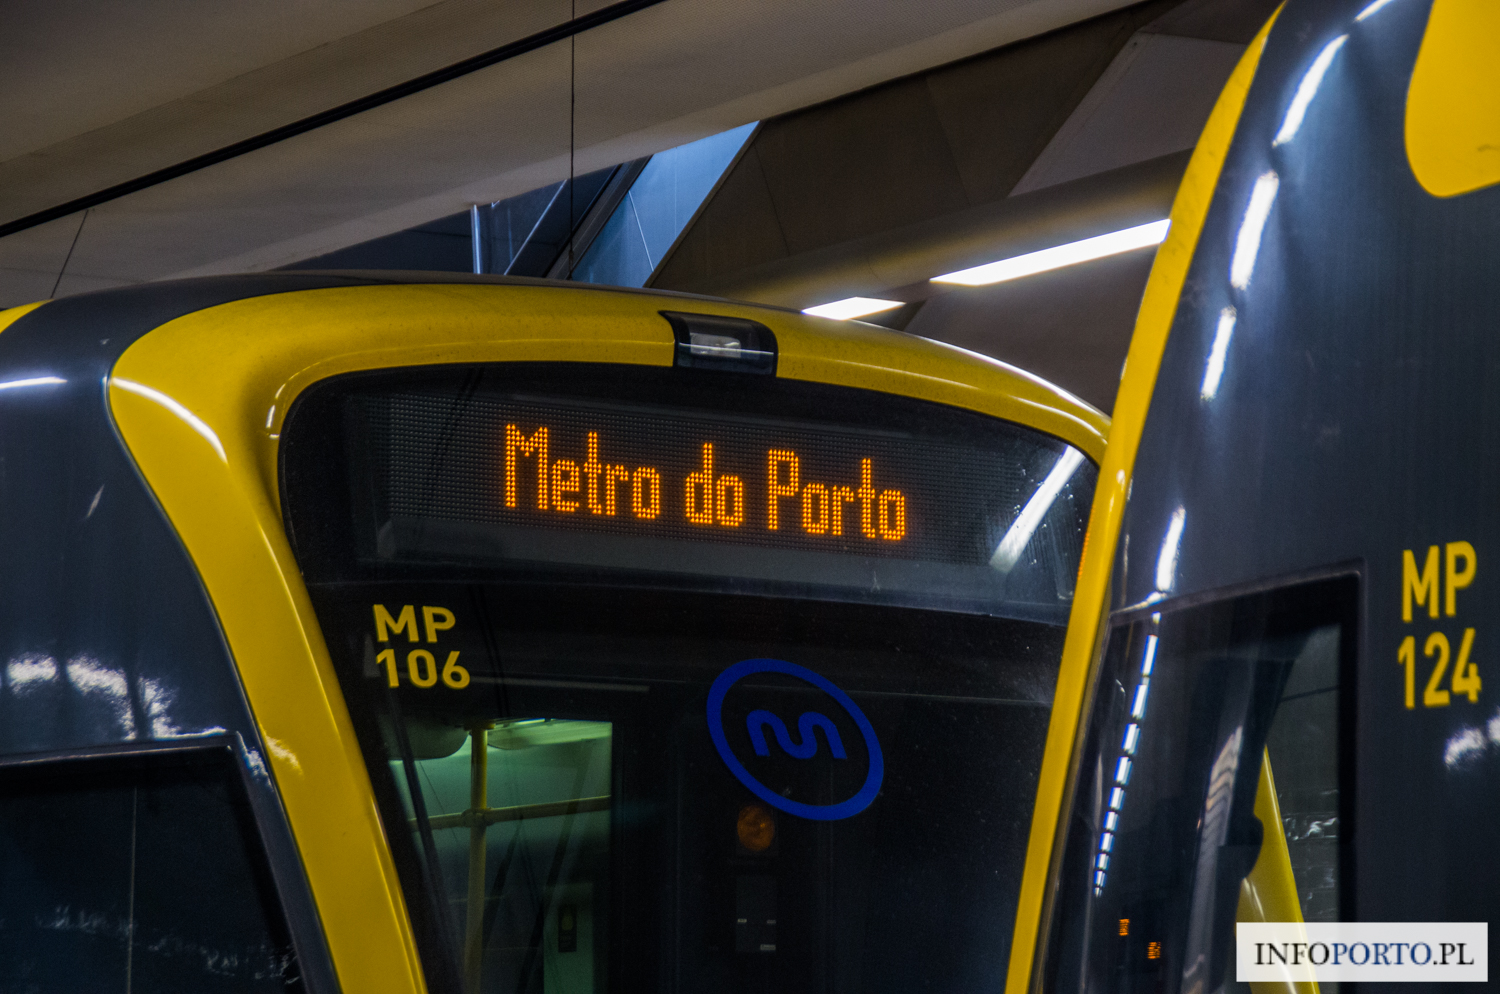 Porto komunikacja miejska bilety cena rodzaje ceny polski przewodnik po Porto transport publiczny jak kupic system opis informacje metro autobusy Andante karta